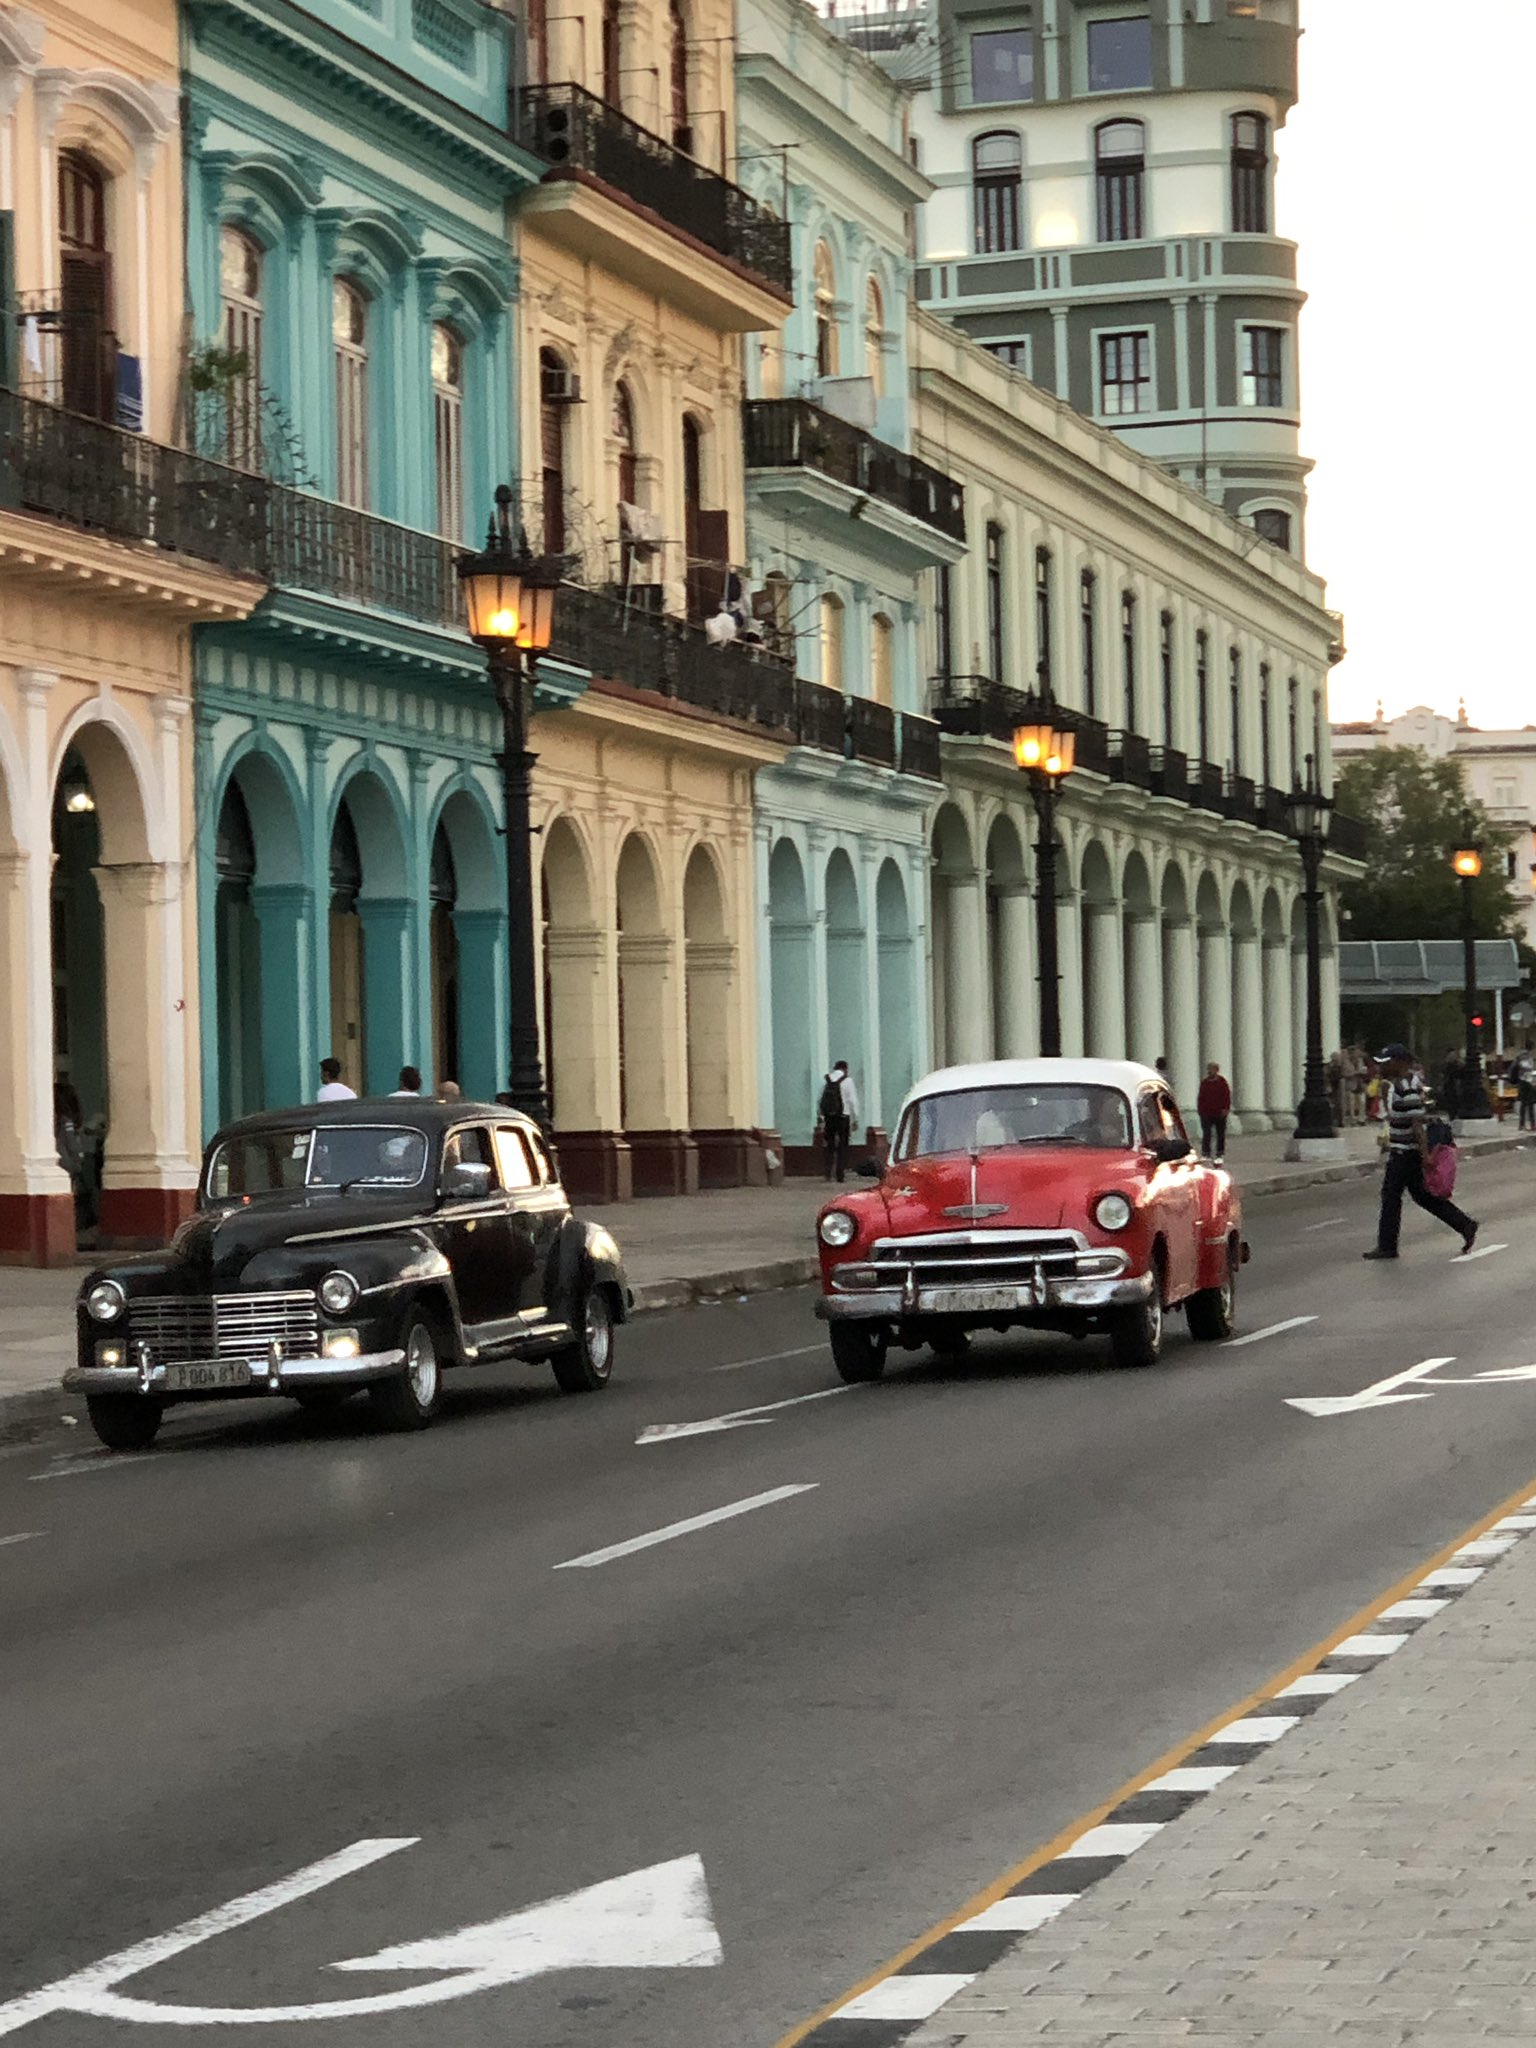 𝑗𝑢𝑛𝑘𝑜 キューバ のハバナ 街はかっこいいクラシックカーで あふれています Voyage Travel Cuba Habana Caribbeanislands Marcaribe Photography Photo Car ハバナ キューバ クラシックカー 車 旅 旅先 写真 旅人 地球の歩き方